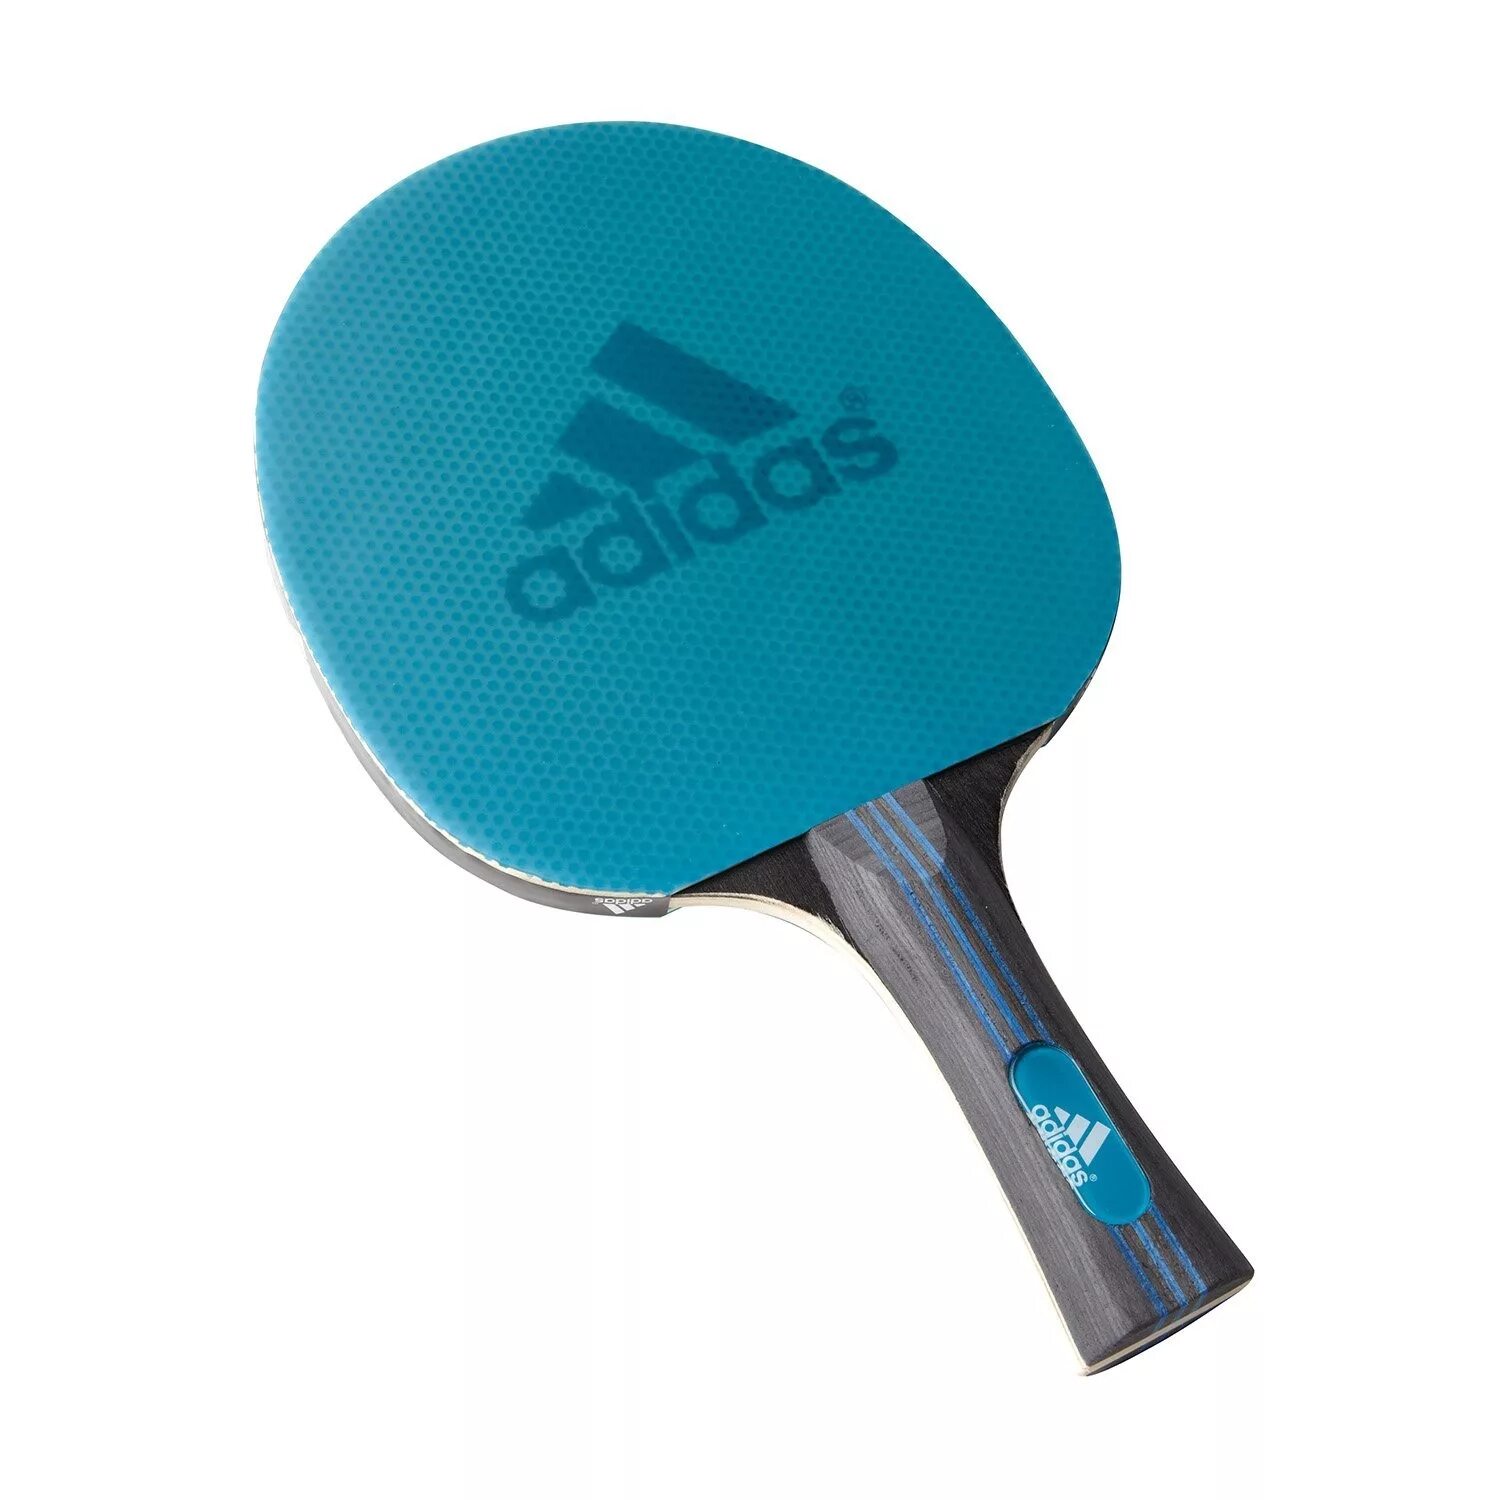 Средства настольного тенниса. Adidas Laser ракетка для настольного тенниса. Ракетка адидас для настольного тенниса. Ракетка адидас для настольного тенниса Vigor 120. Ракетка для пинг понга adidas.